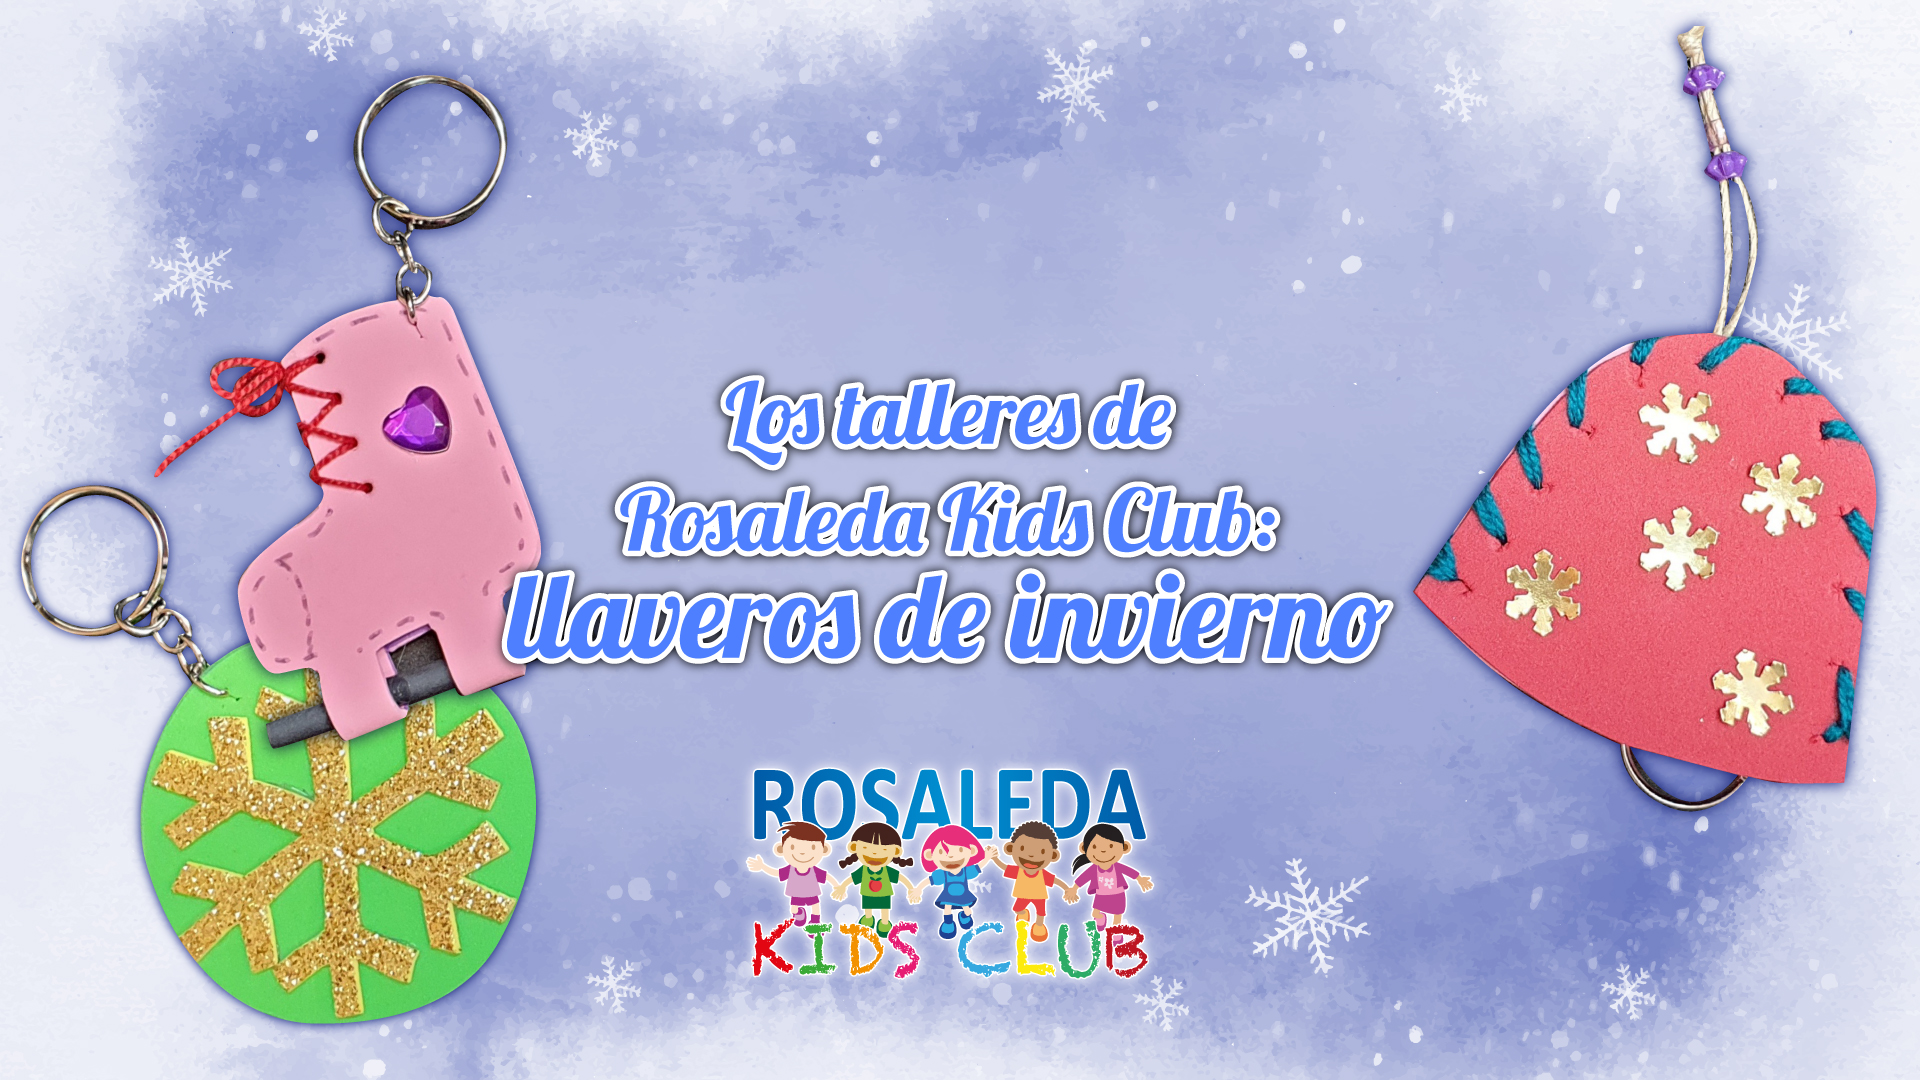 Las talleres de Rosaleda Kids Club: llaveros de invierno